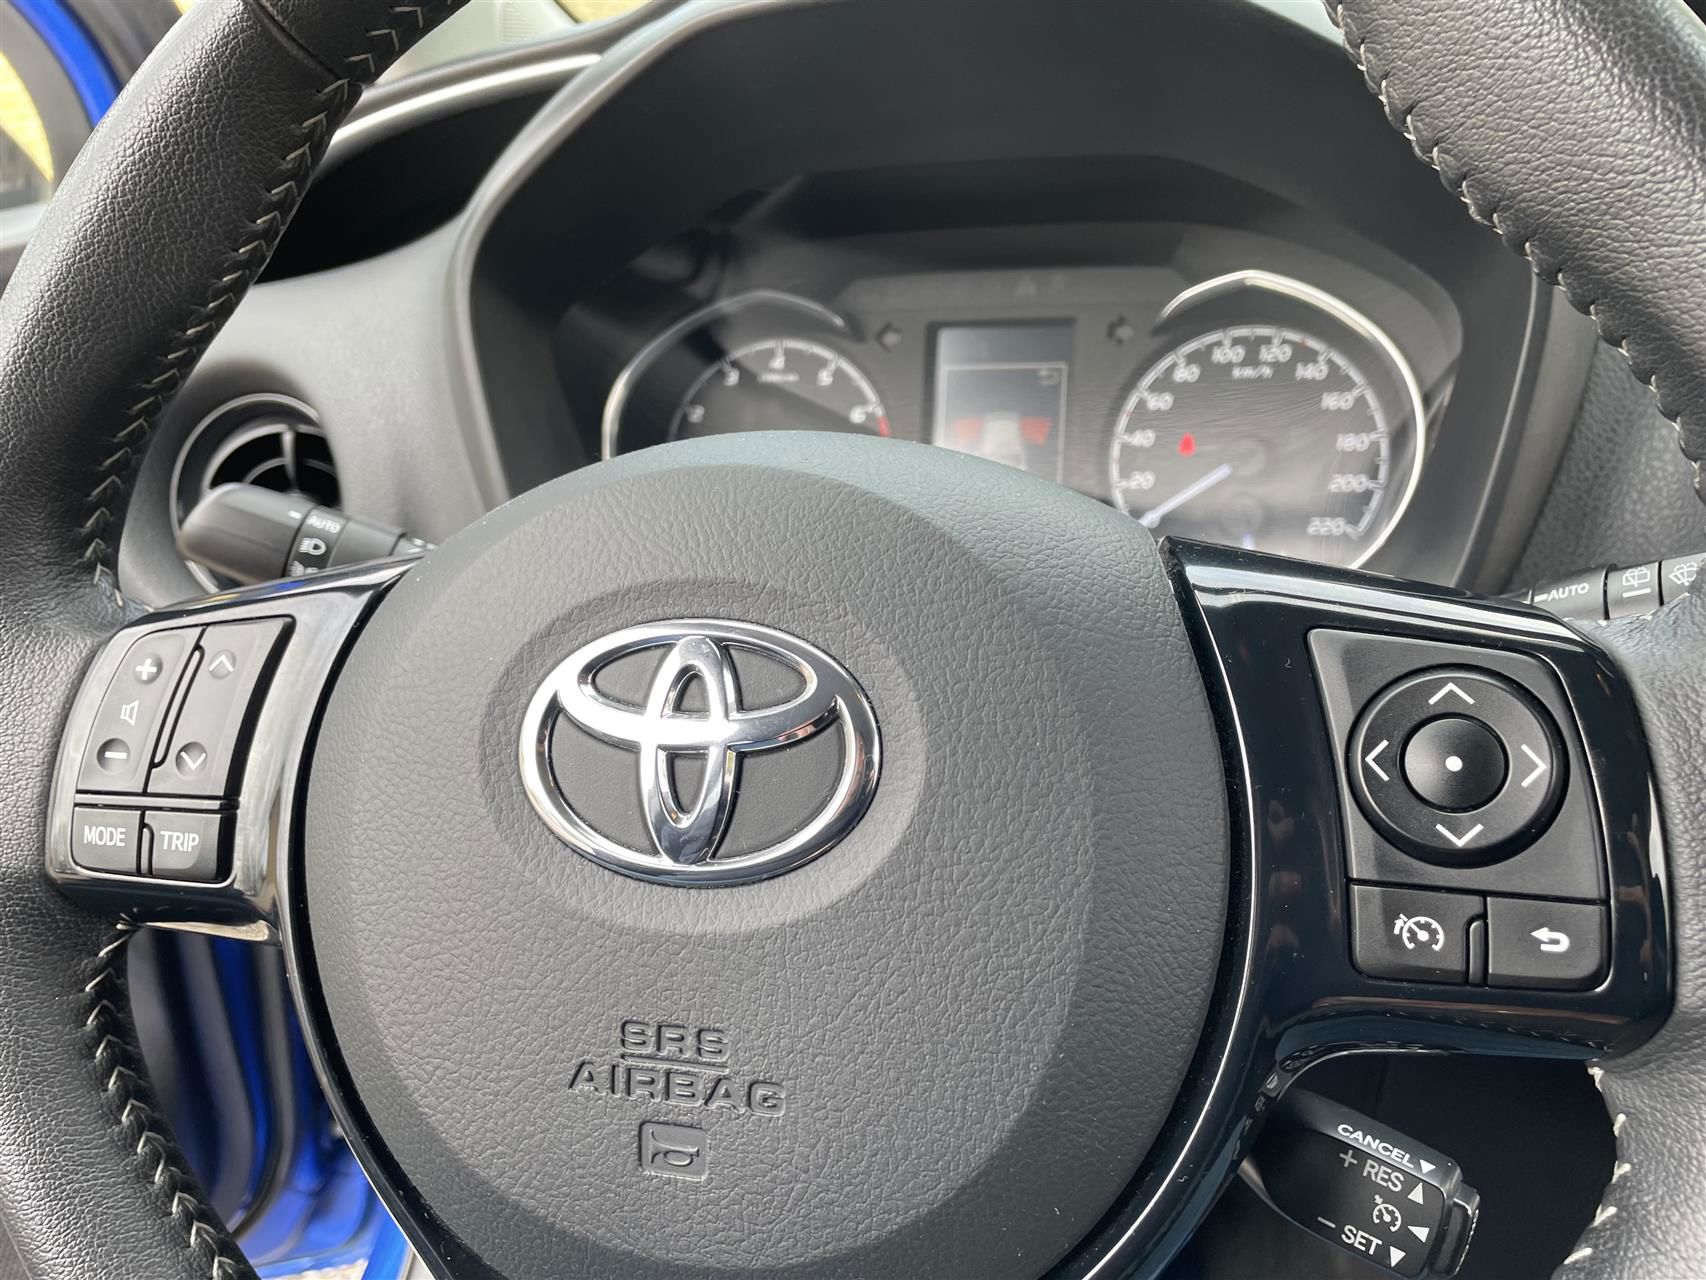 Billede af Toyota Yaris 1,5 VVT-I T3 Premiumpakke 111HK 5d 6g